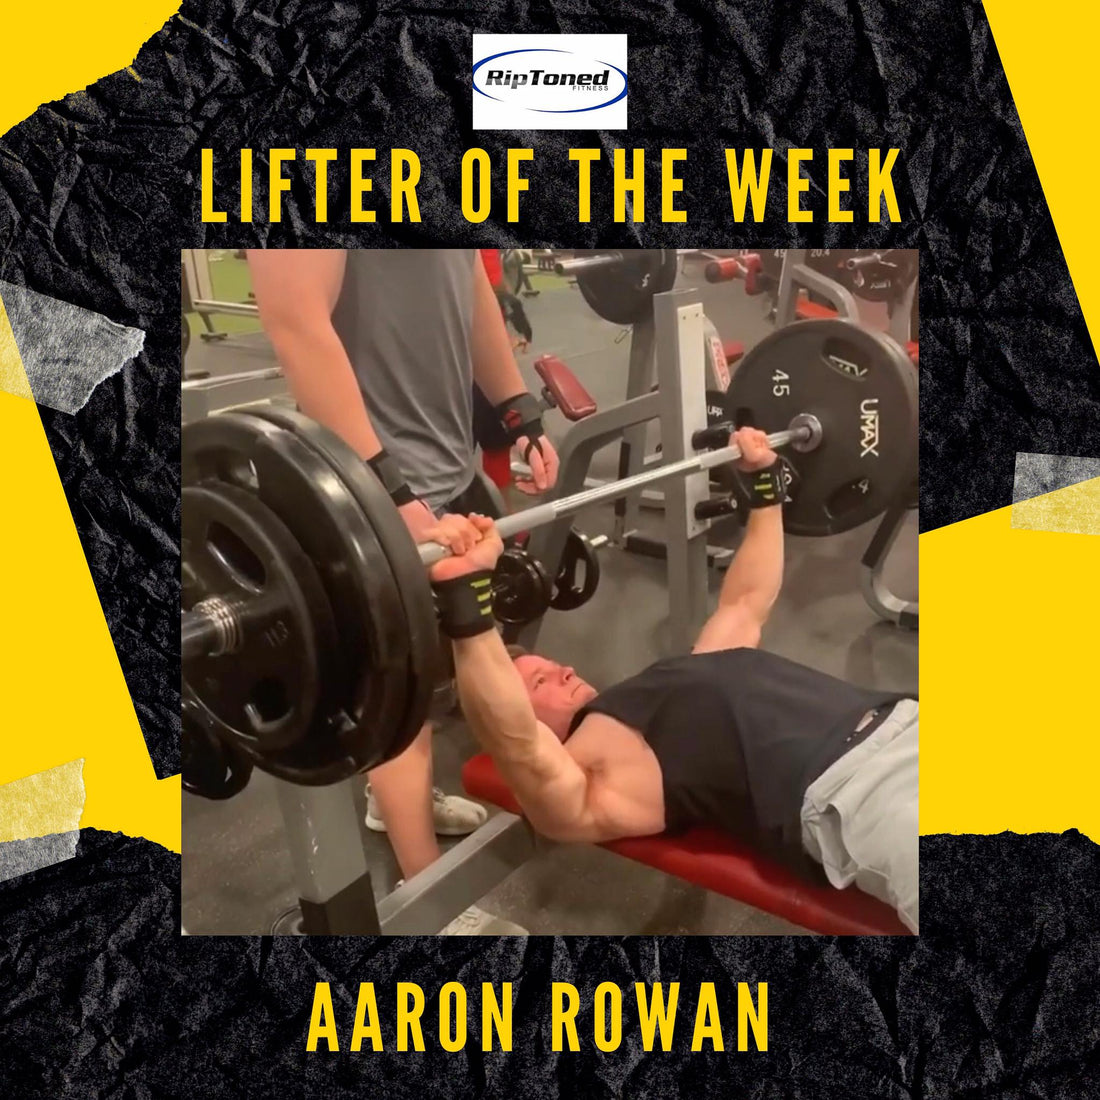 Lifter of the Week - Aaron Rowan - Rip Toned